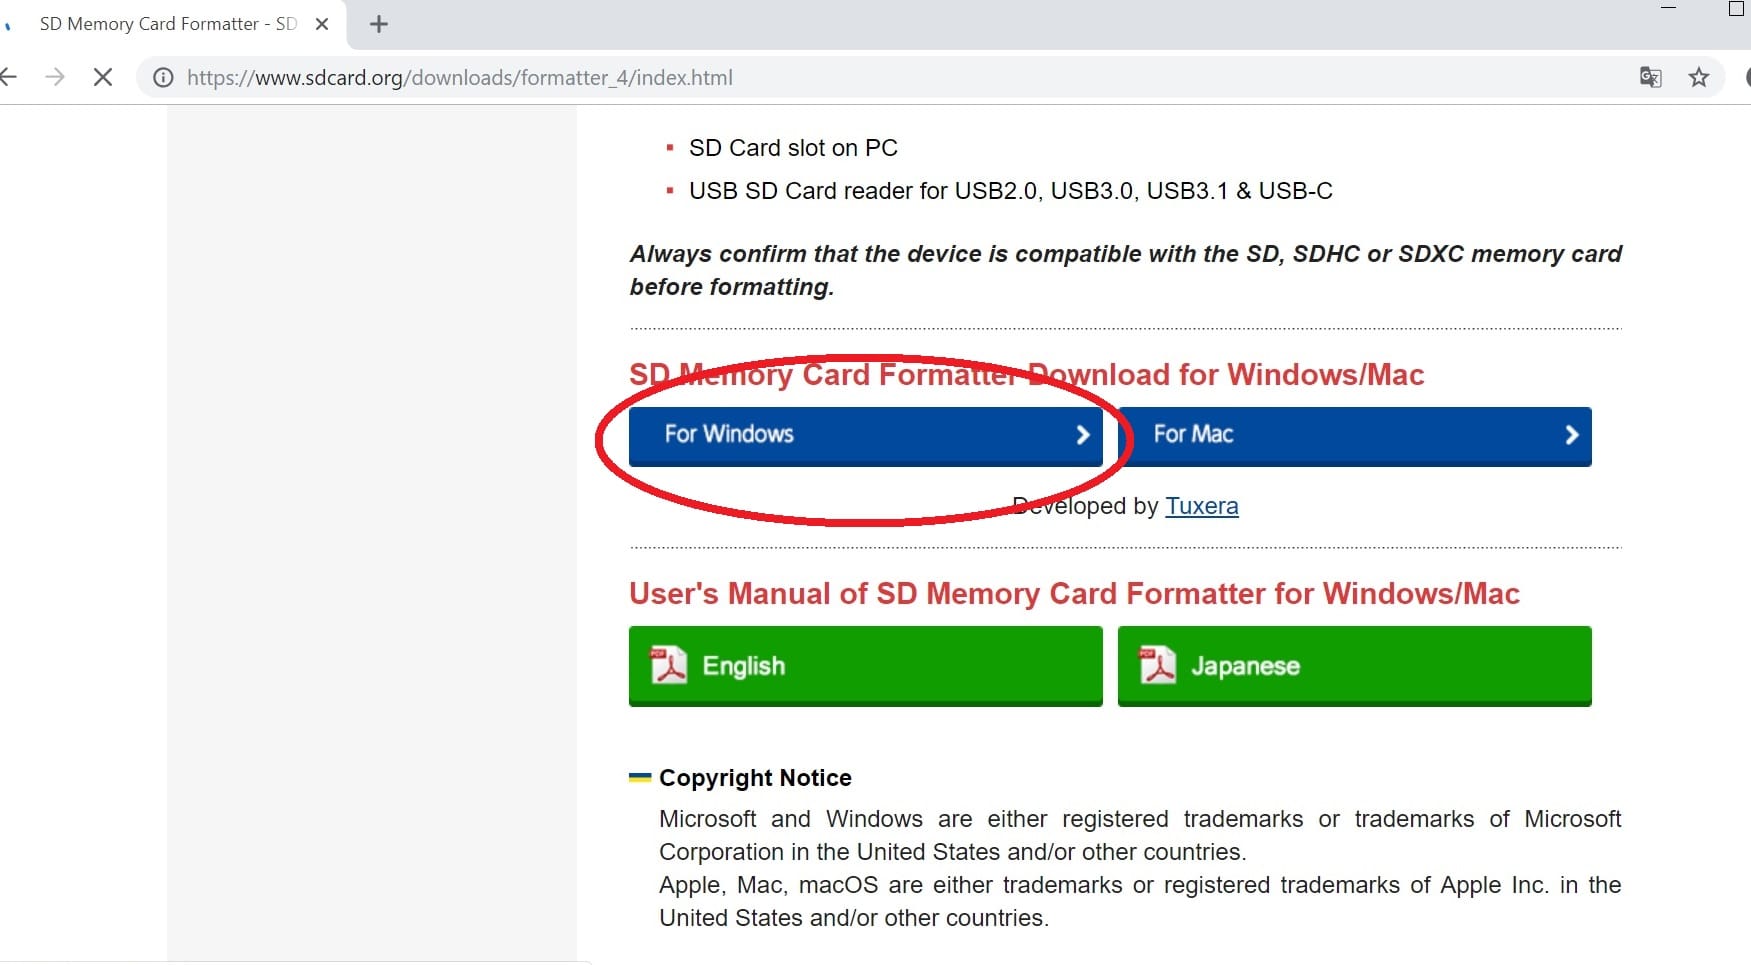 Um den USB-Stick wieder in den Ursprungszustand zu versetzen, müssen Sie das Medium formatieren. Nutzen Sie dafür eine Software, beispielsweise "SD Memory Card Formatter". Den Download finden Sie hier.